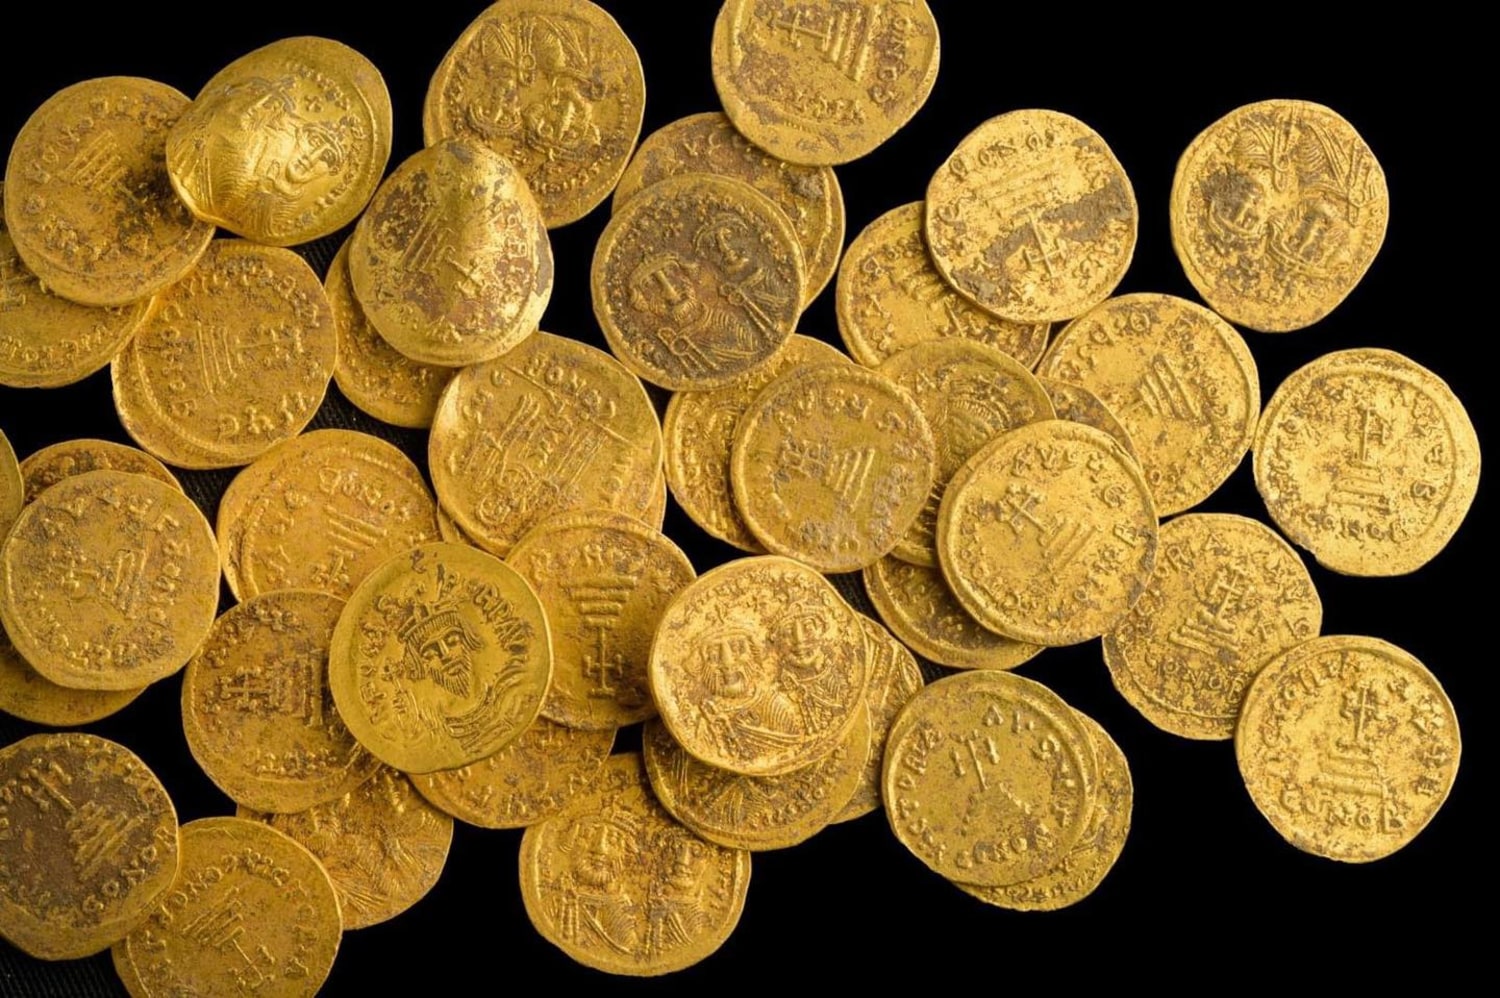 Gold coins, worth $290,000, found under kitchen floorboard in England